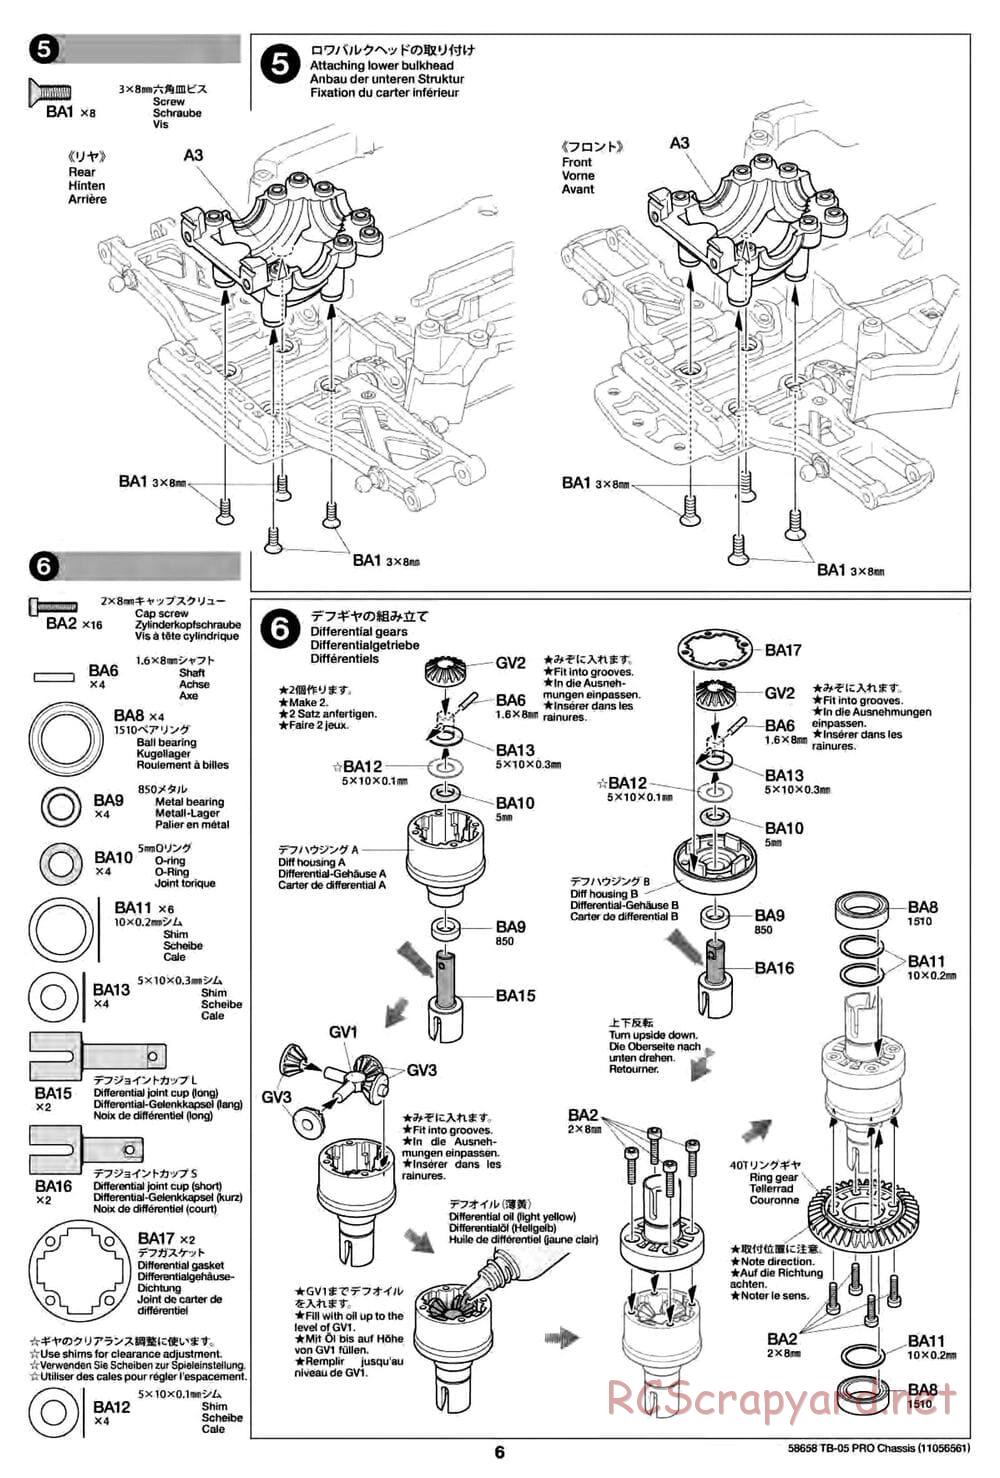 Tamiya - TB-05 Pro Chassis - Manual - Page 6